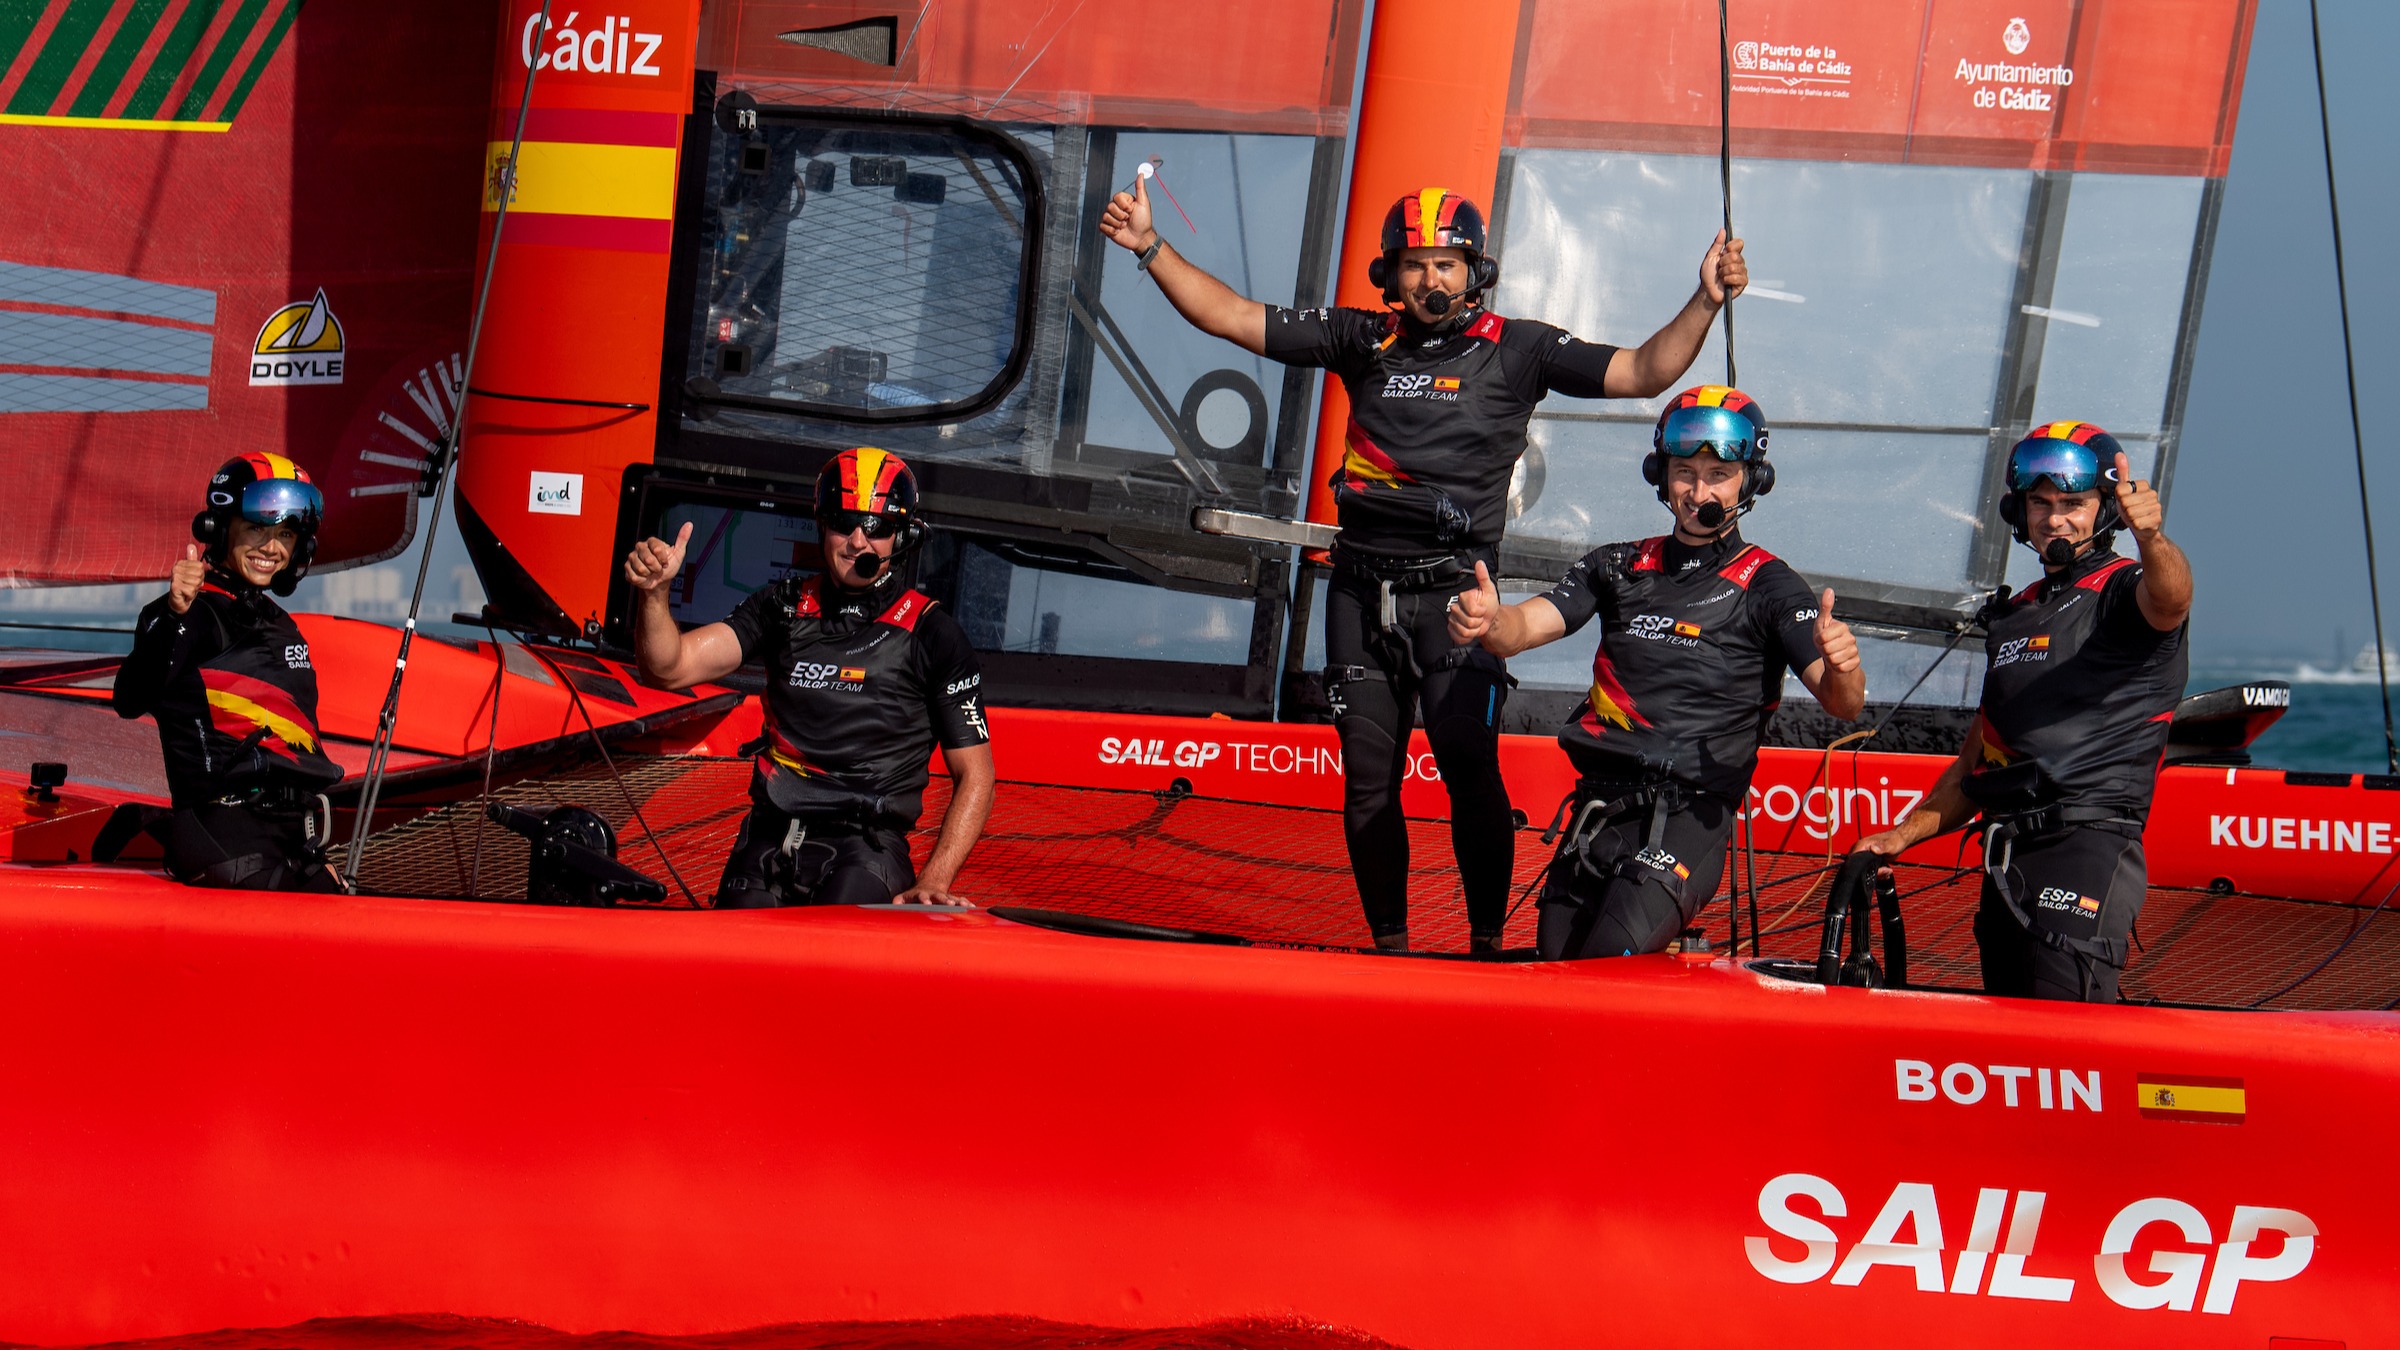 Season 4 // Spain celebrate Fleet Race 1 victory in Cadiz, Spain